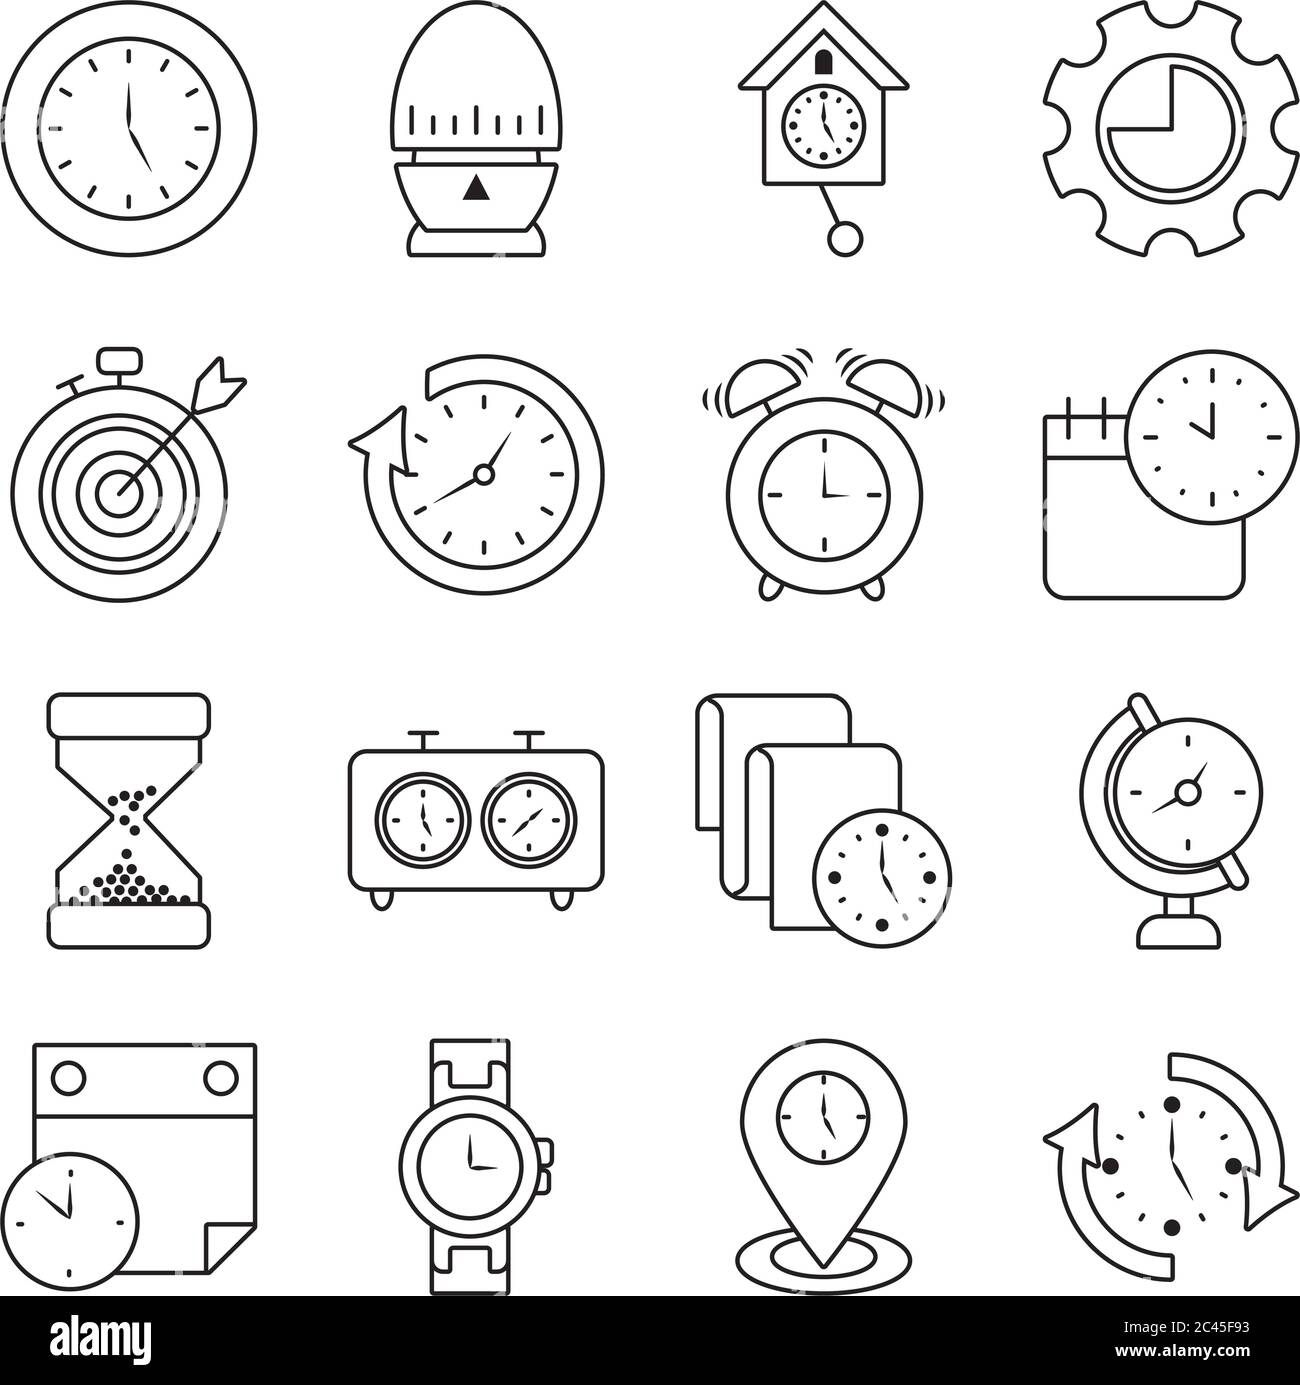 Cùng ngắm nhìn đồng hồ đếm và biểu tượng thời gian trên nền trắng kiểu dáng đường! Sự đơn giản và tinh tế của nó sẽ khiến bạn say mê. Hãy tưởng tượng bạn sẽ có một chiếc đồng hồ đẹp và chính xác như vậy trên bàn làm việc của mình, nó sẽ mang đến sự hiện đại cho không gian làm việc của bạn.